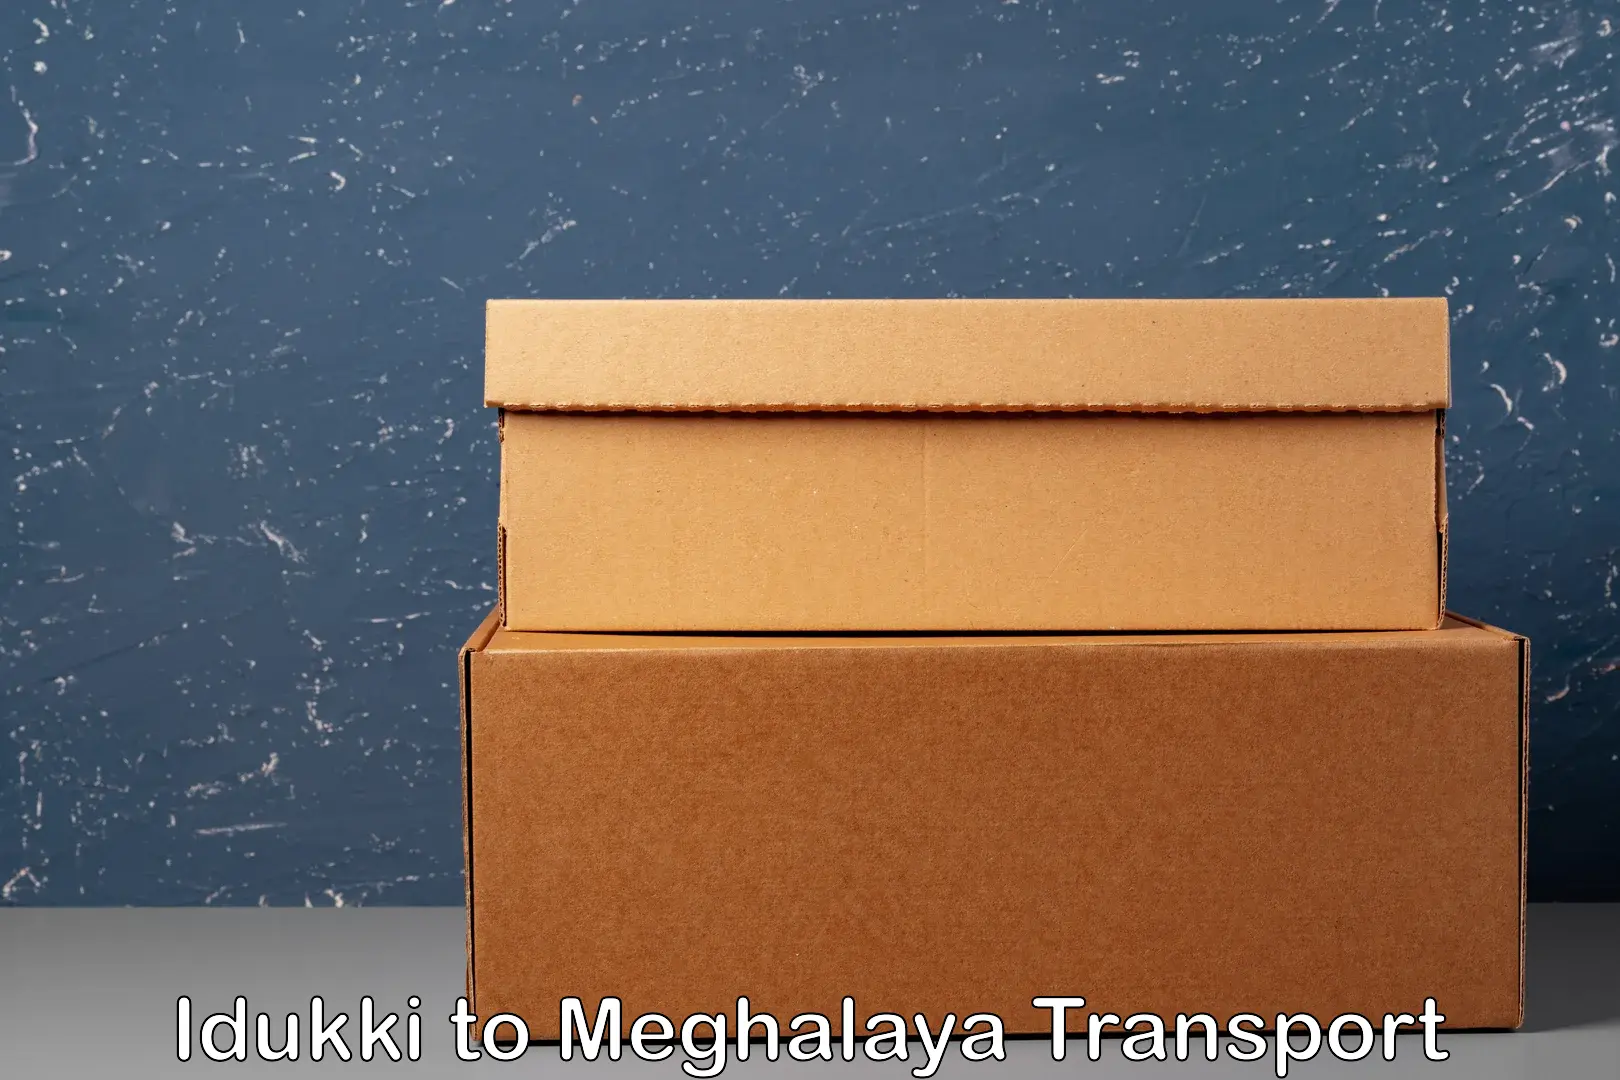 Goods transport services Idukki to Tikrikilla